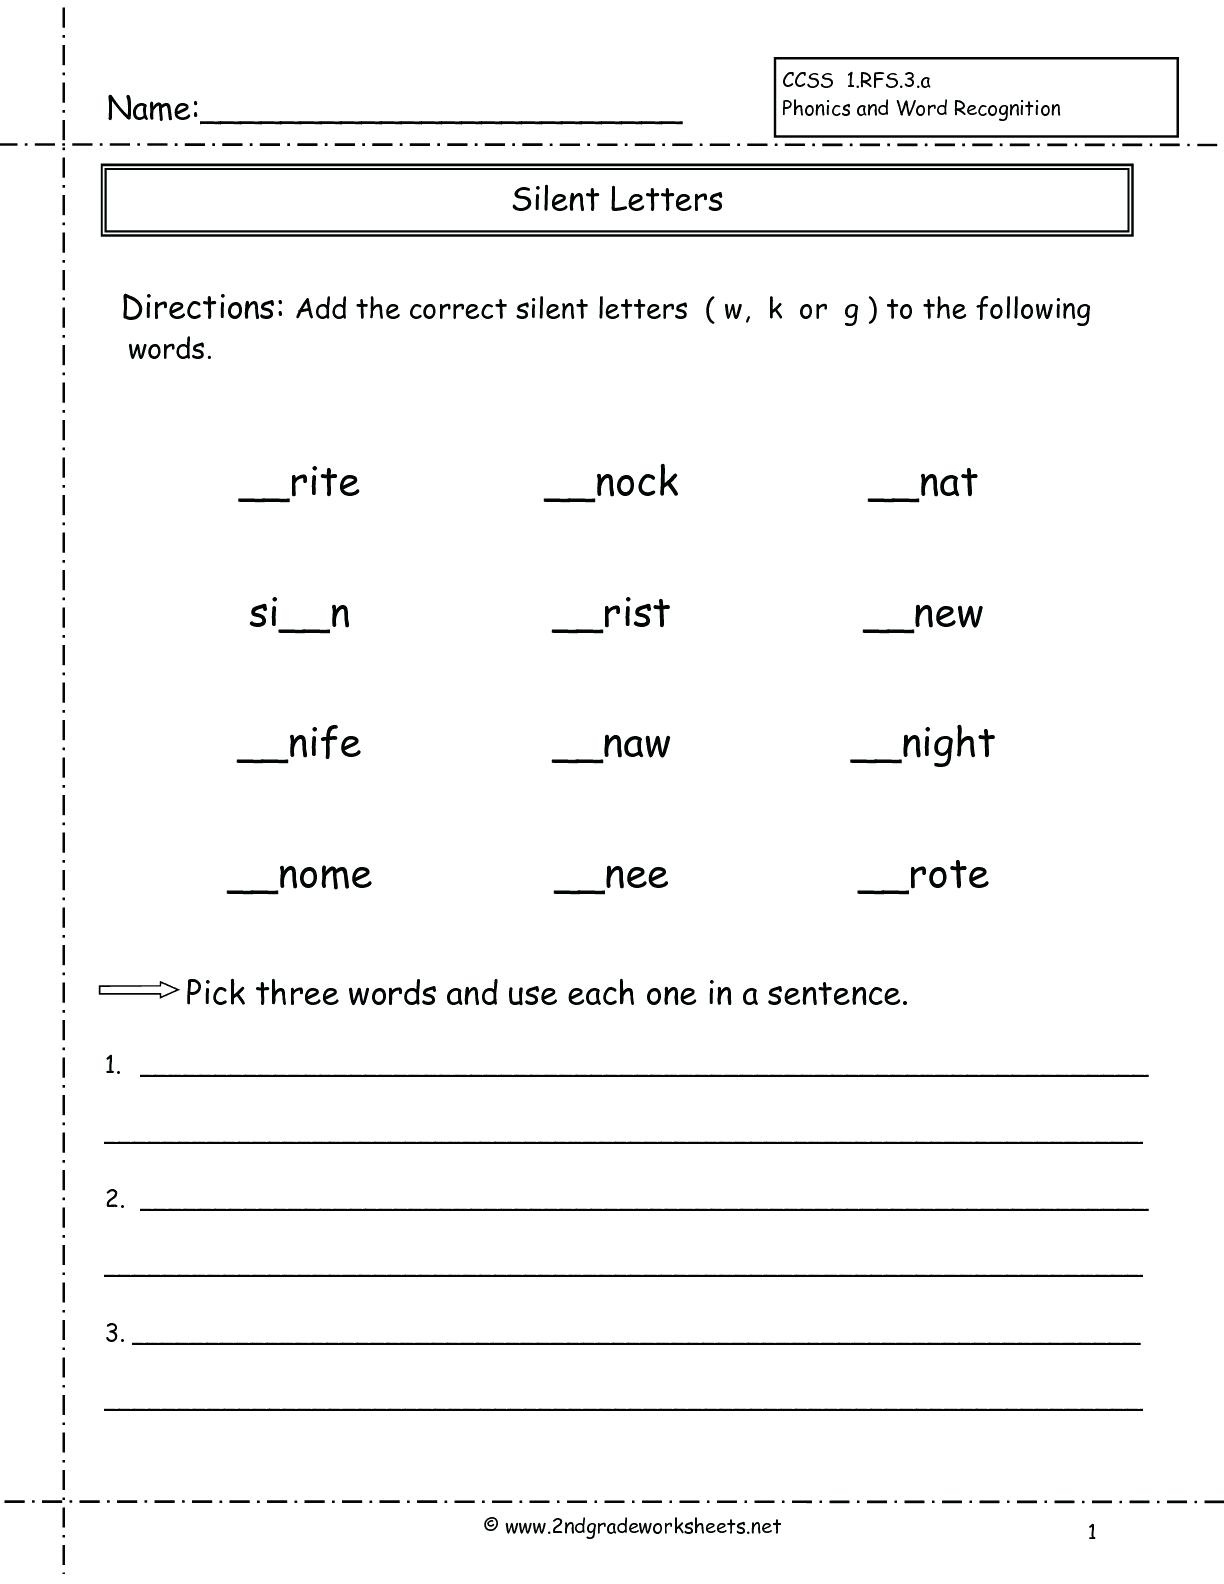 silent-letters-online-pdf-worksheet-silent-letters-worksheets-roderick-howe